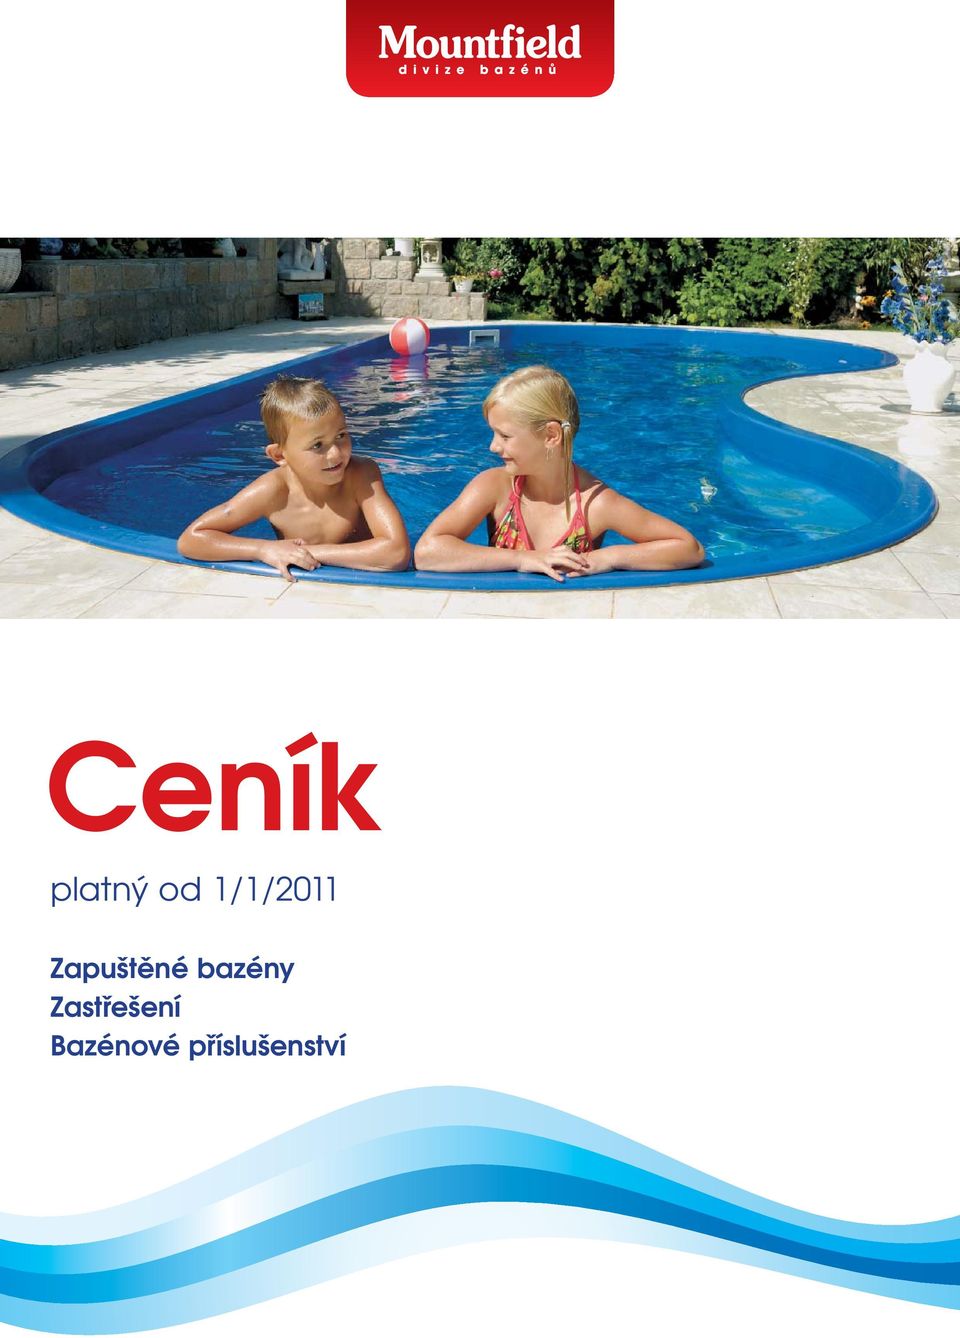 Ceník. platný od 1/1/2011. Zapuštěné bazény Zastřešení Bazénové  příslušenství - PDF Free Download